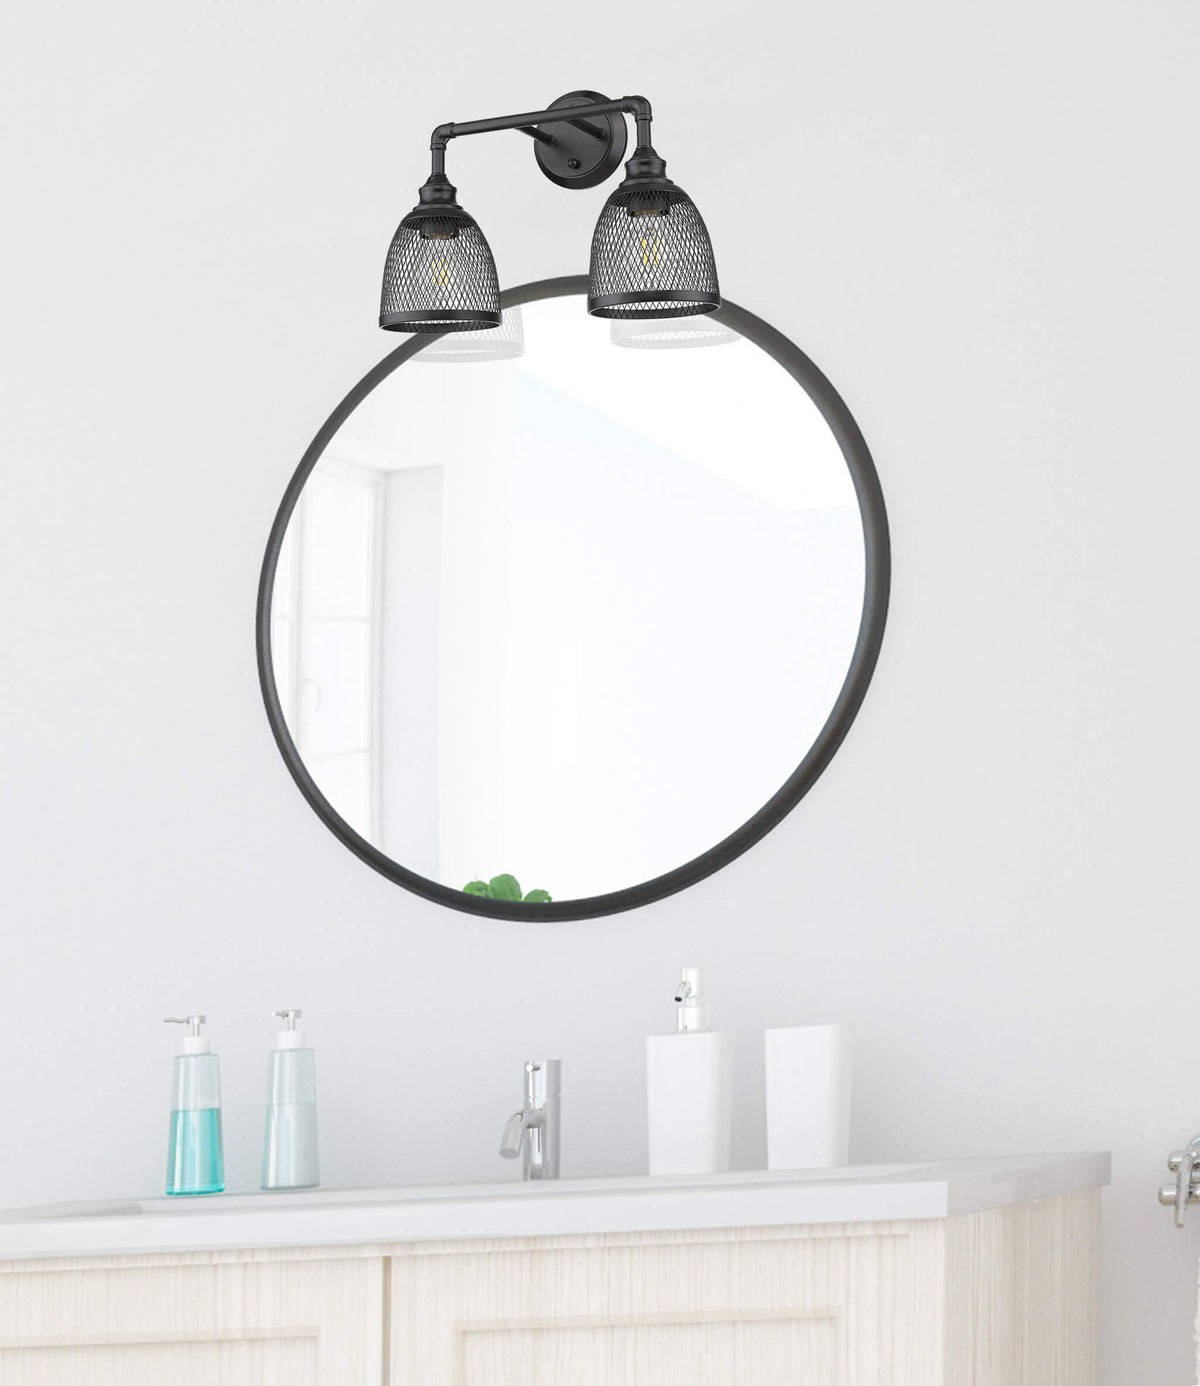 Matte black bathroom vanity light fixtures over mirror